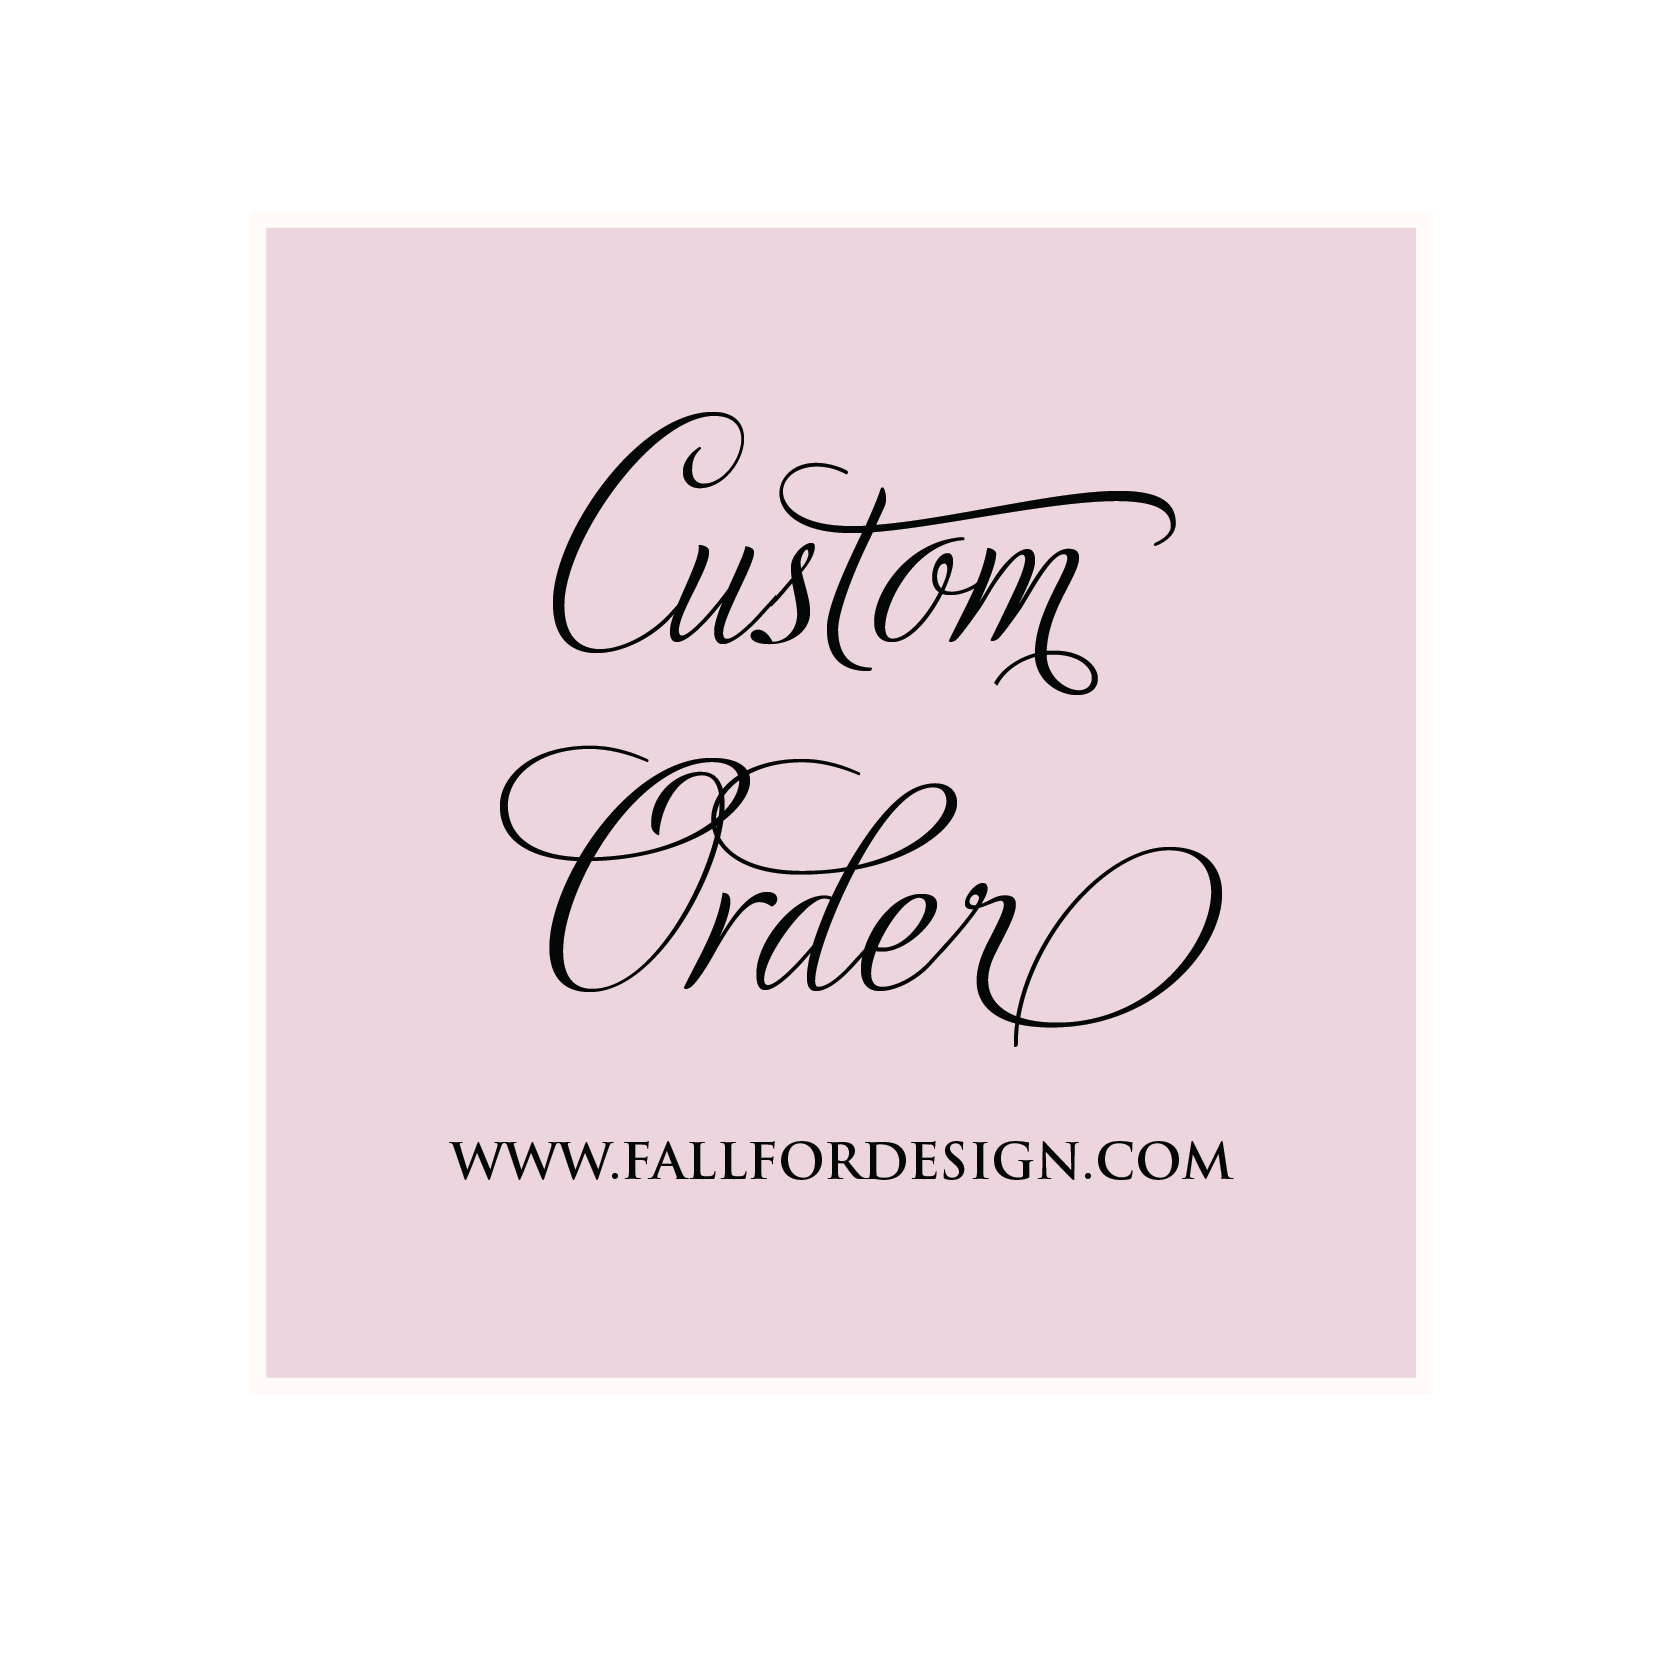 Custom Order www.fallfordesign.com